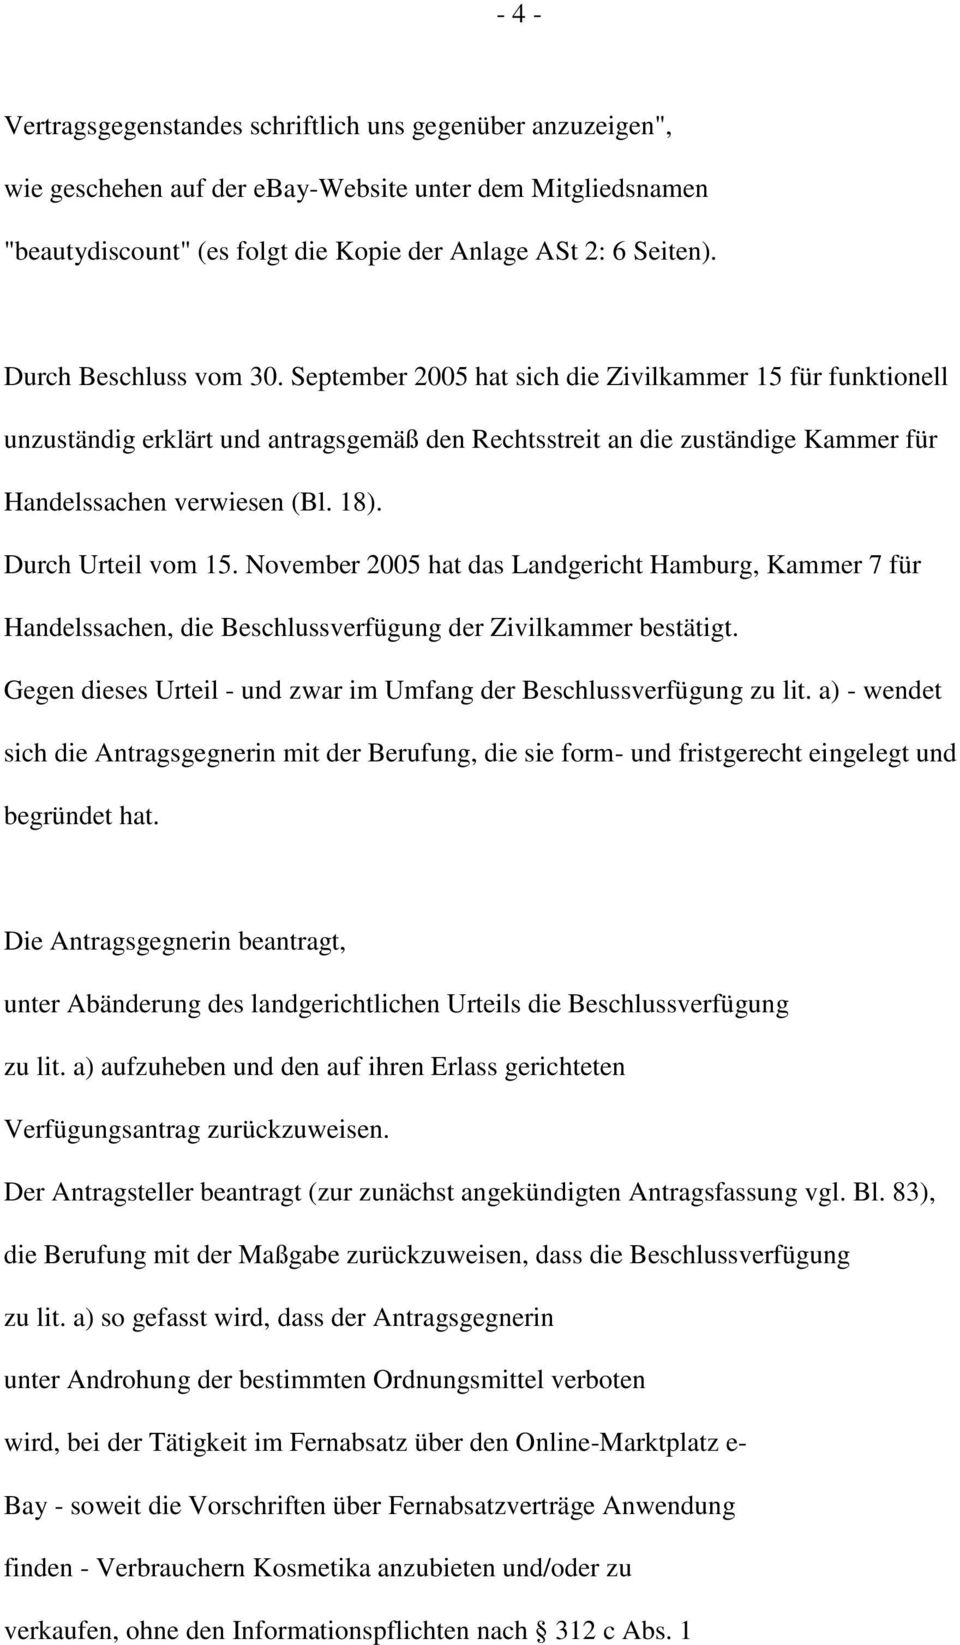 Durch Urteil vom 15. November 2005 hat das Landgericht Hamburg, Kammer 7 für Handelssachen, die Beschlussverfügung der Zivilkammer bestätigt.